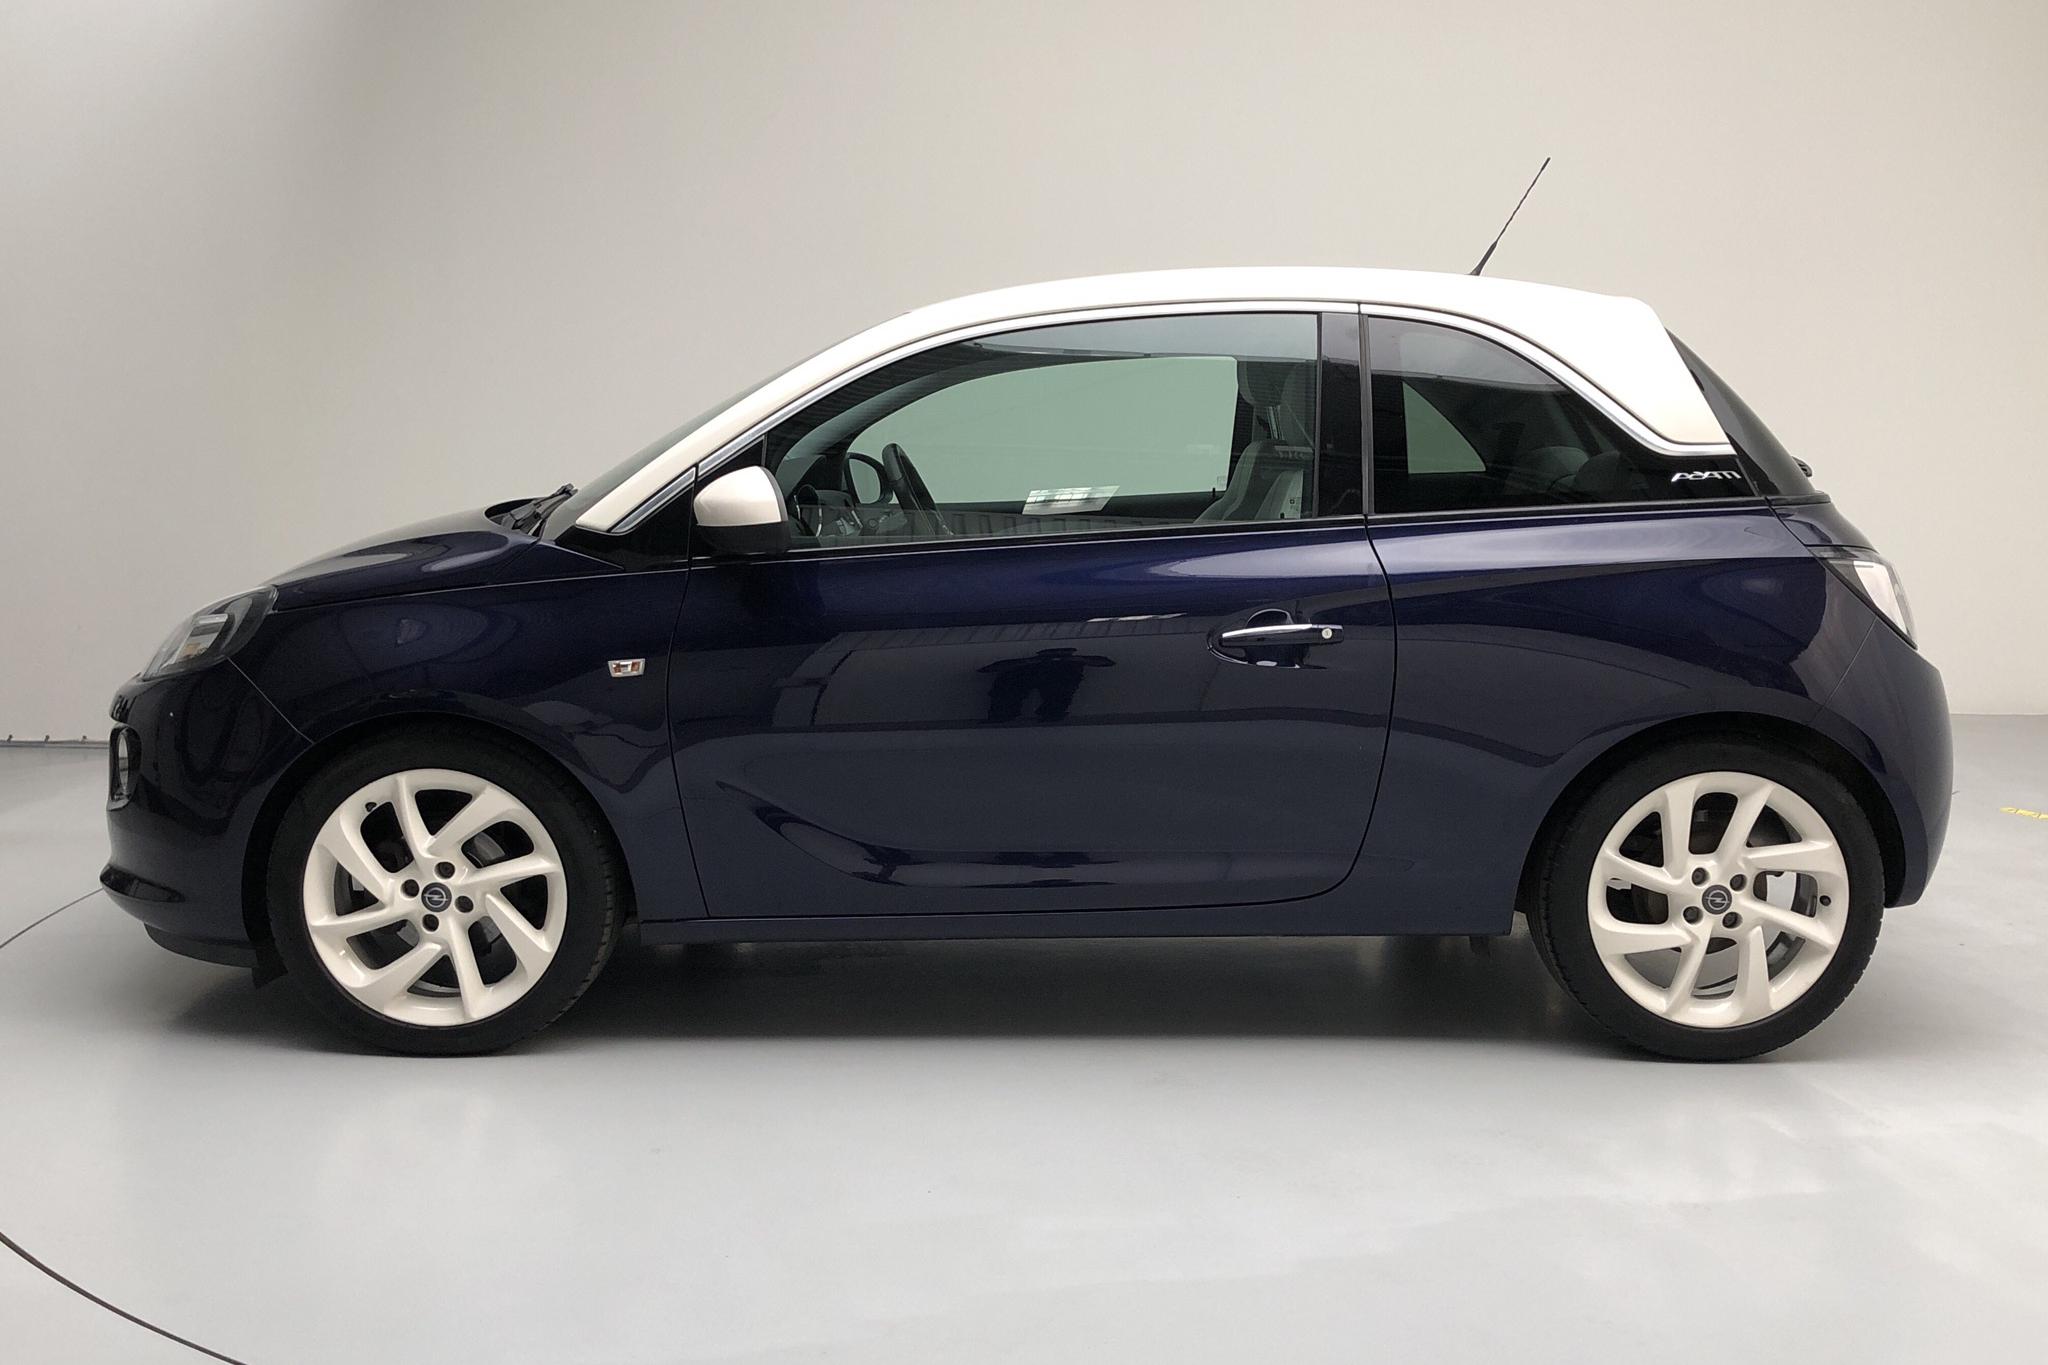 Opel ADAM 1.4 ECOTEC (87hk) - 52 780 km - Manual - blue - 2013